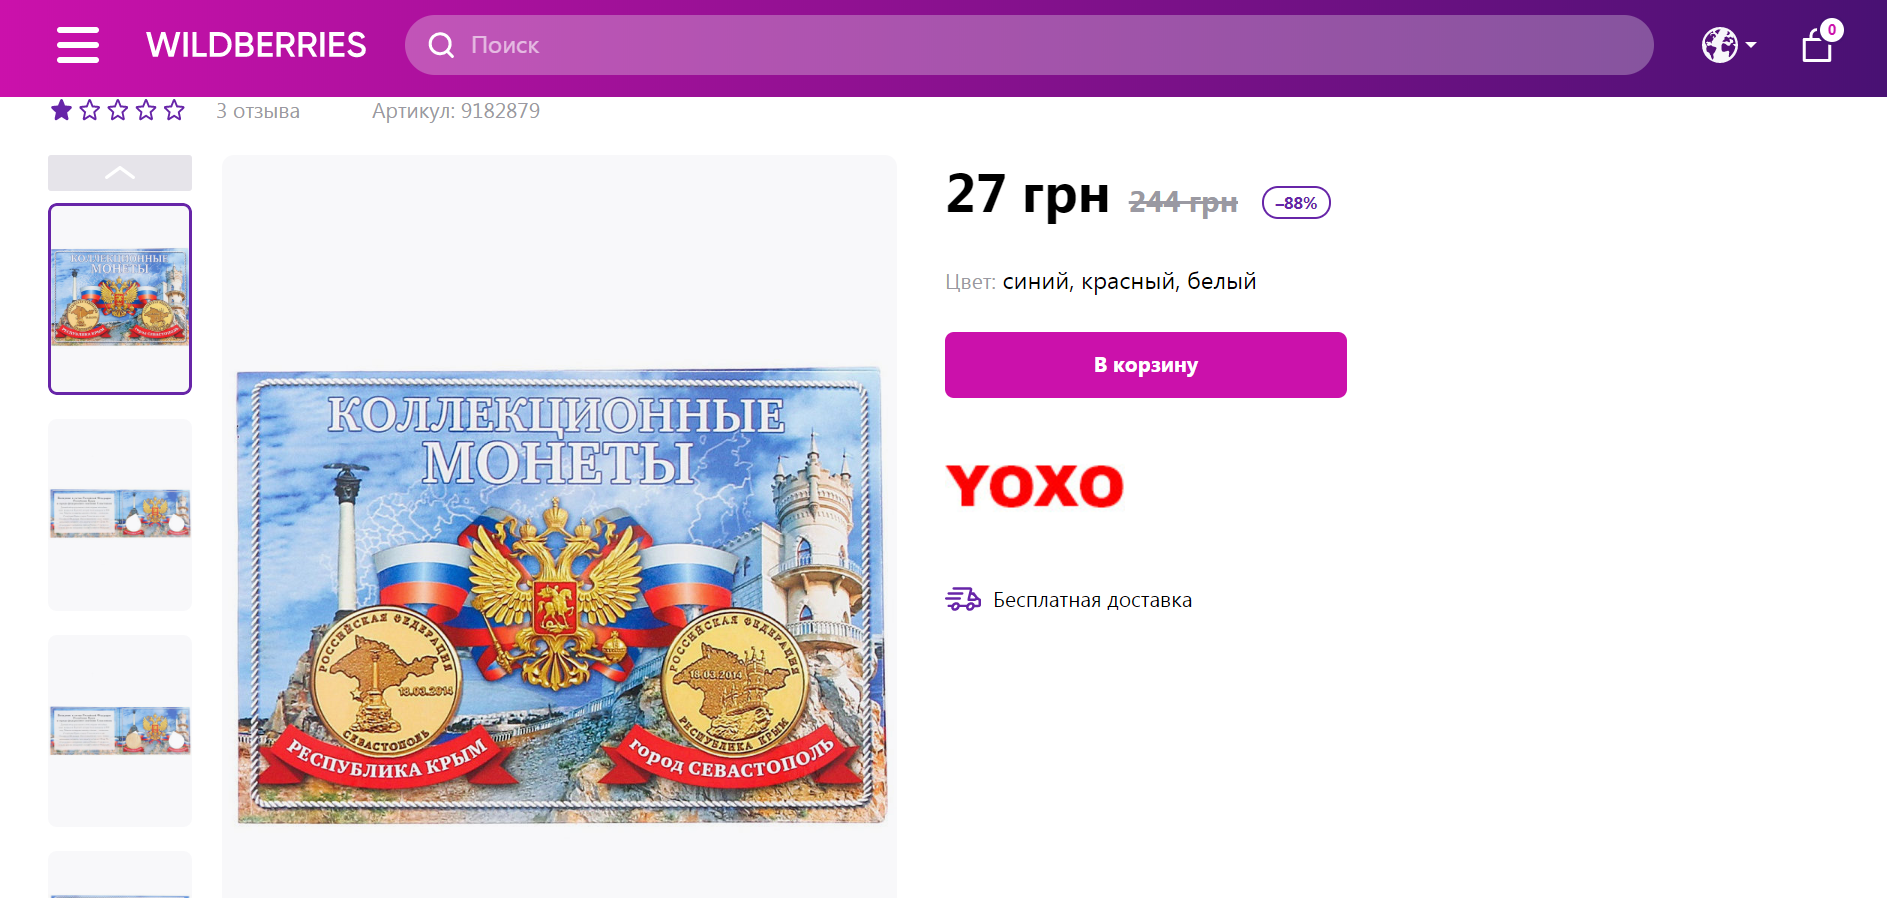 Украинцам предлагают альбом для монет в честь оккупации Крыма.